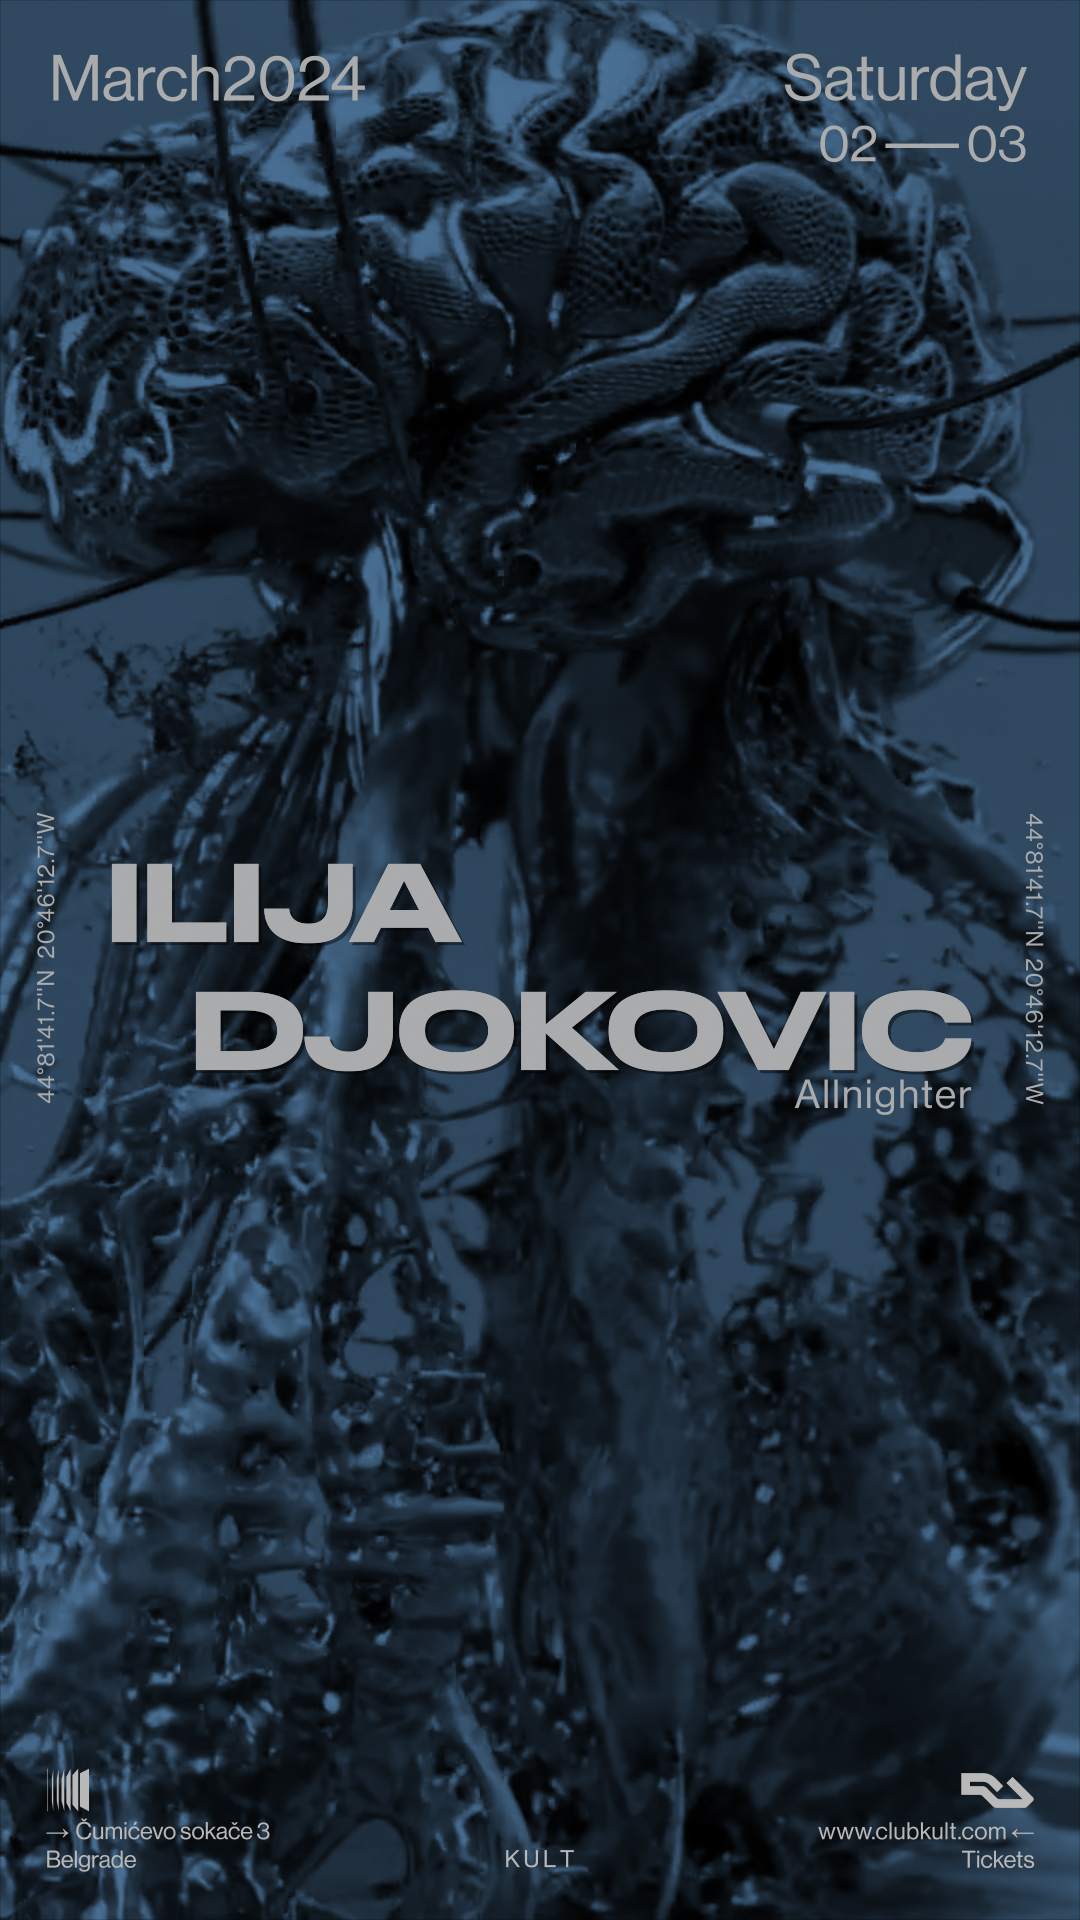 Ilija Djokovic (allnighter) in the KULT - 02.03 - フライヤー表